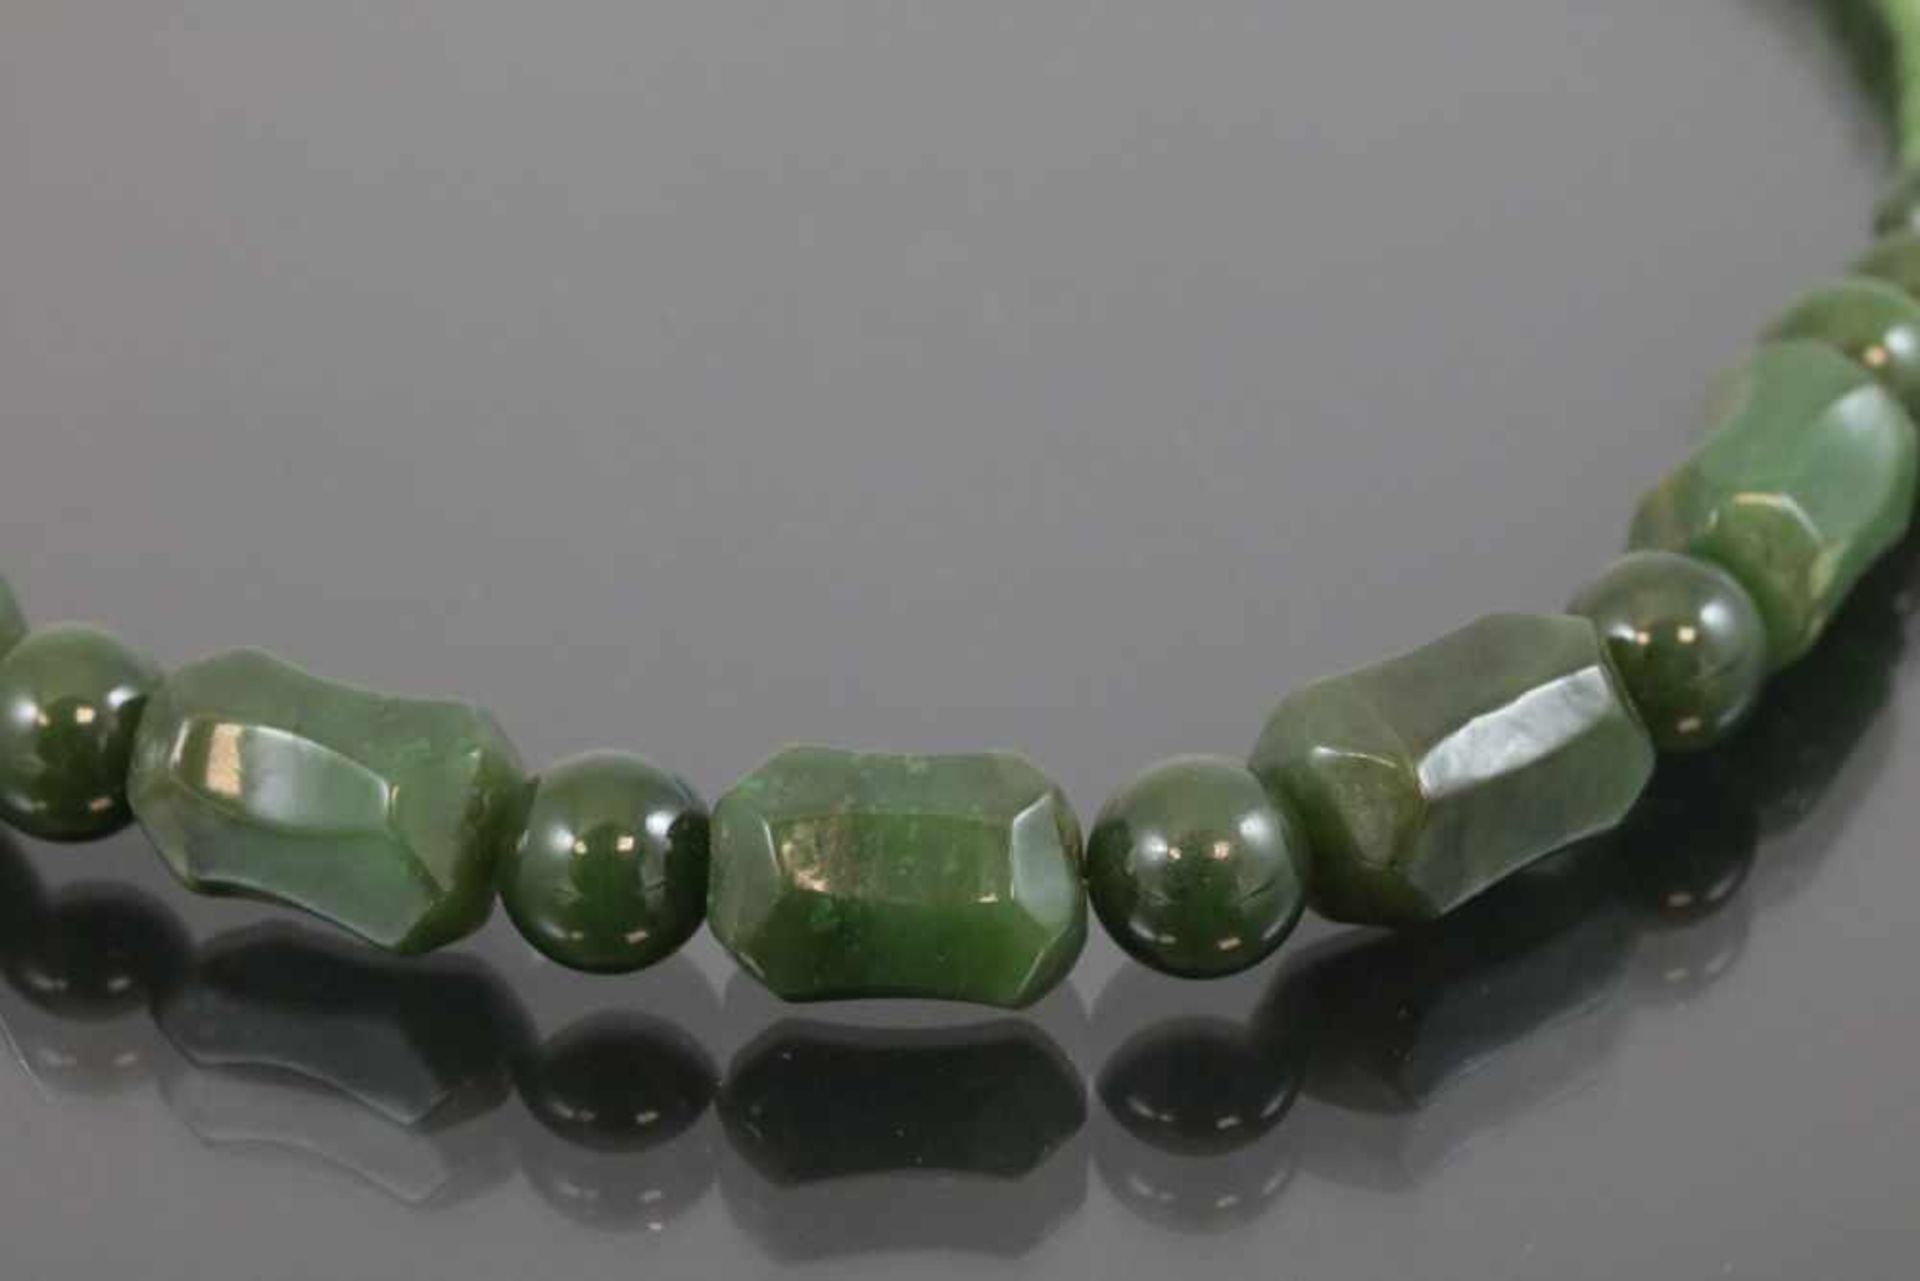 Jade-Kette, Verschluß vergoldet50 Gramm Länge: 46 cm - - -25.00 % buyer's premium on the hammer